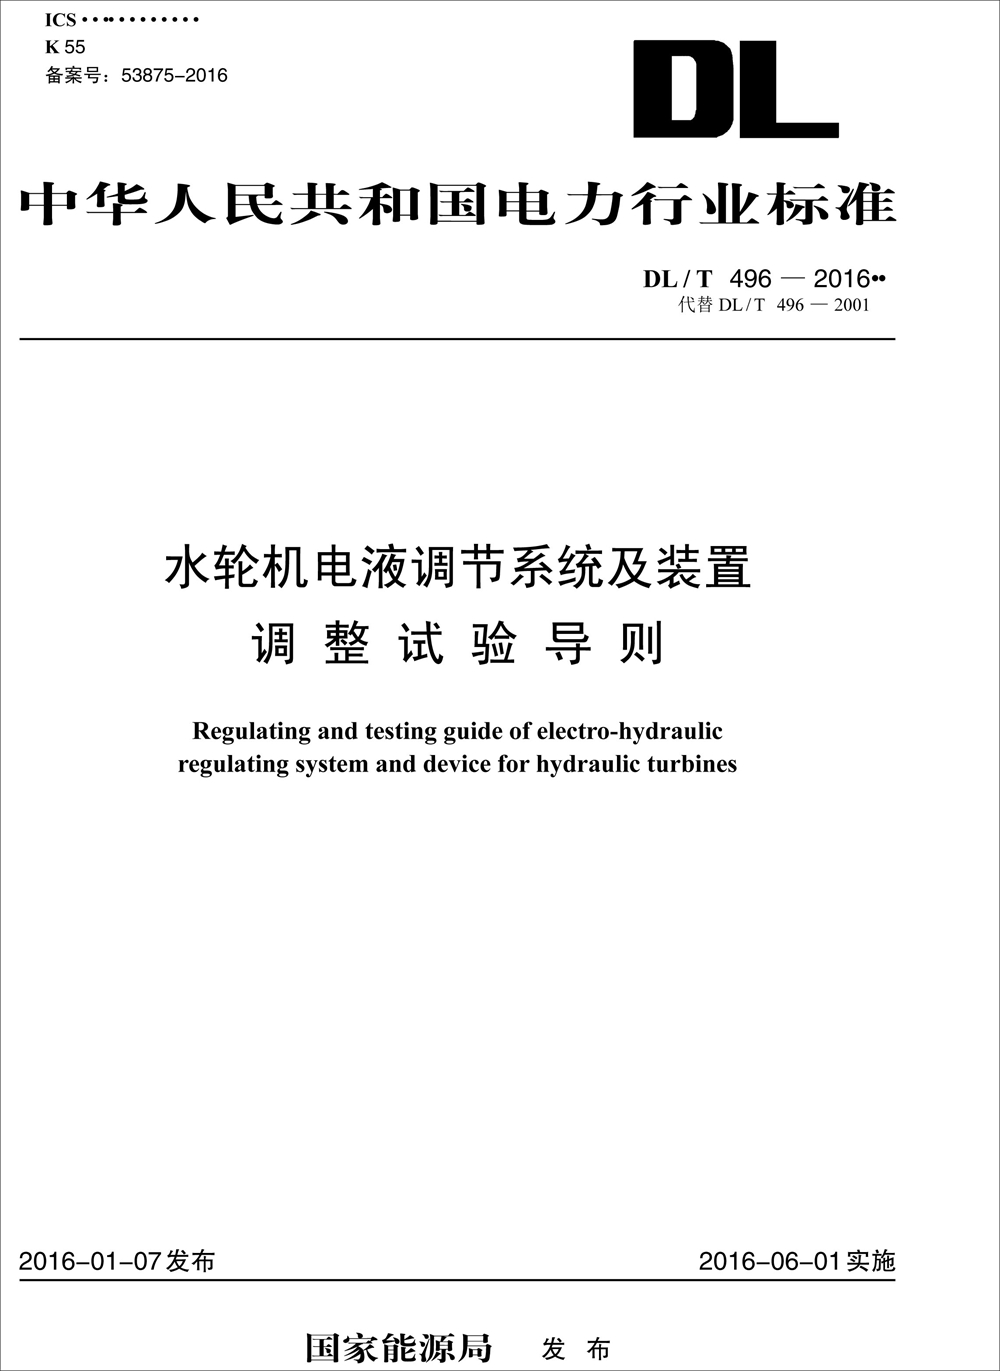 中华人民共和国电力行业标准（DL/T 496-2016）：水轮机电液调节系统及装置调整试验导则 epub格式下载